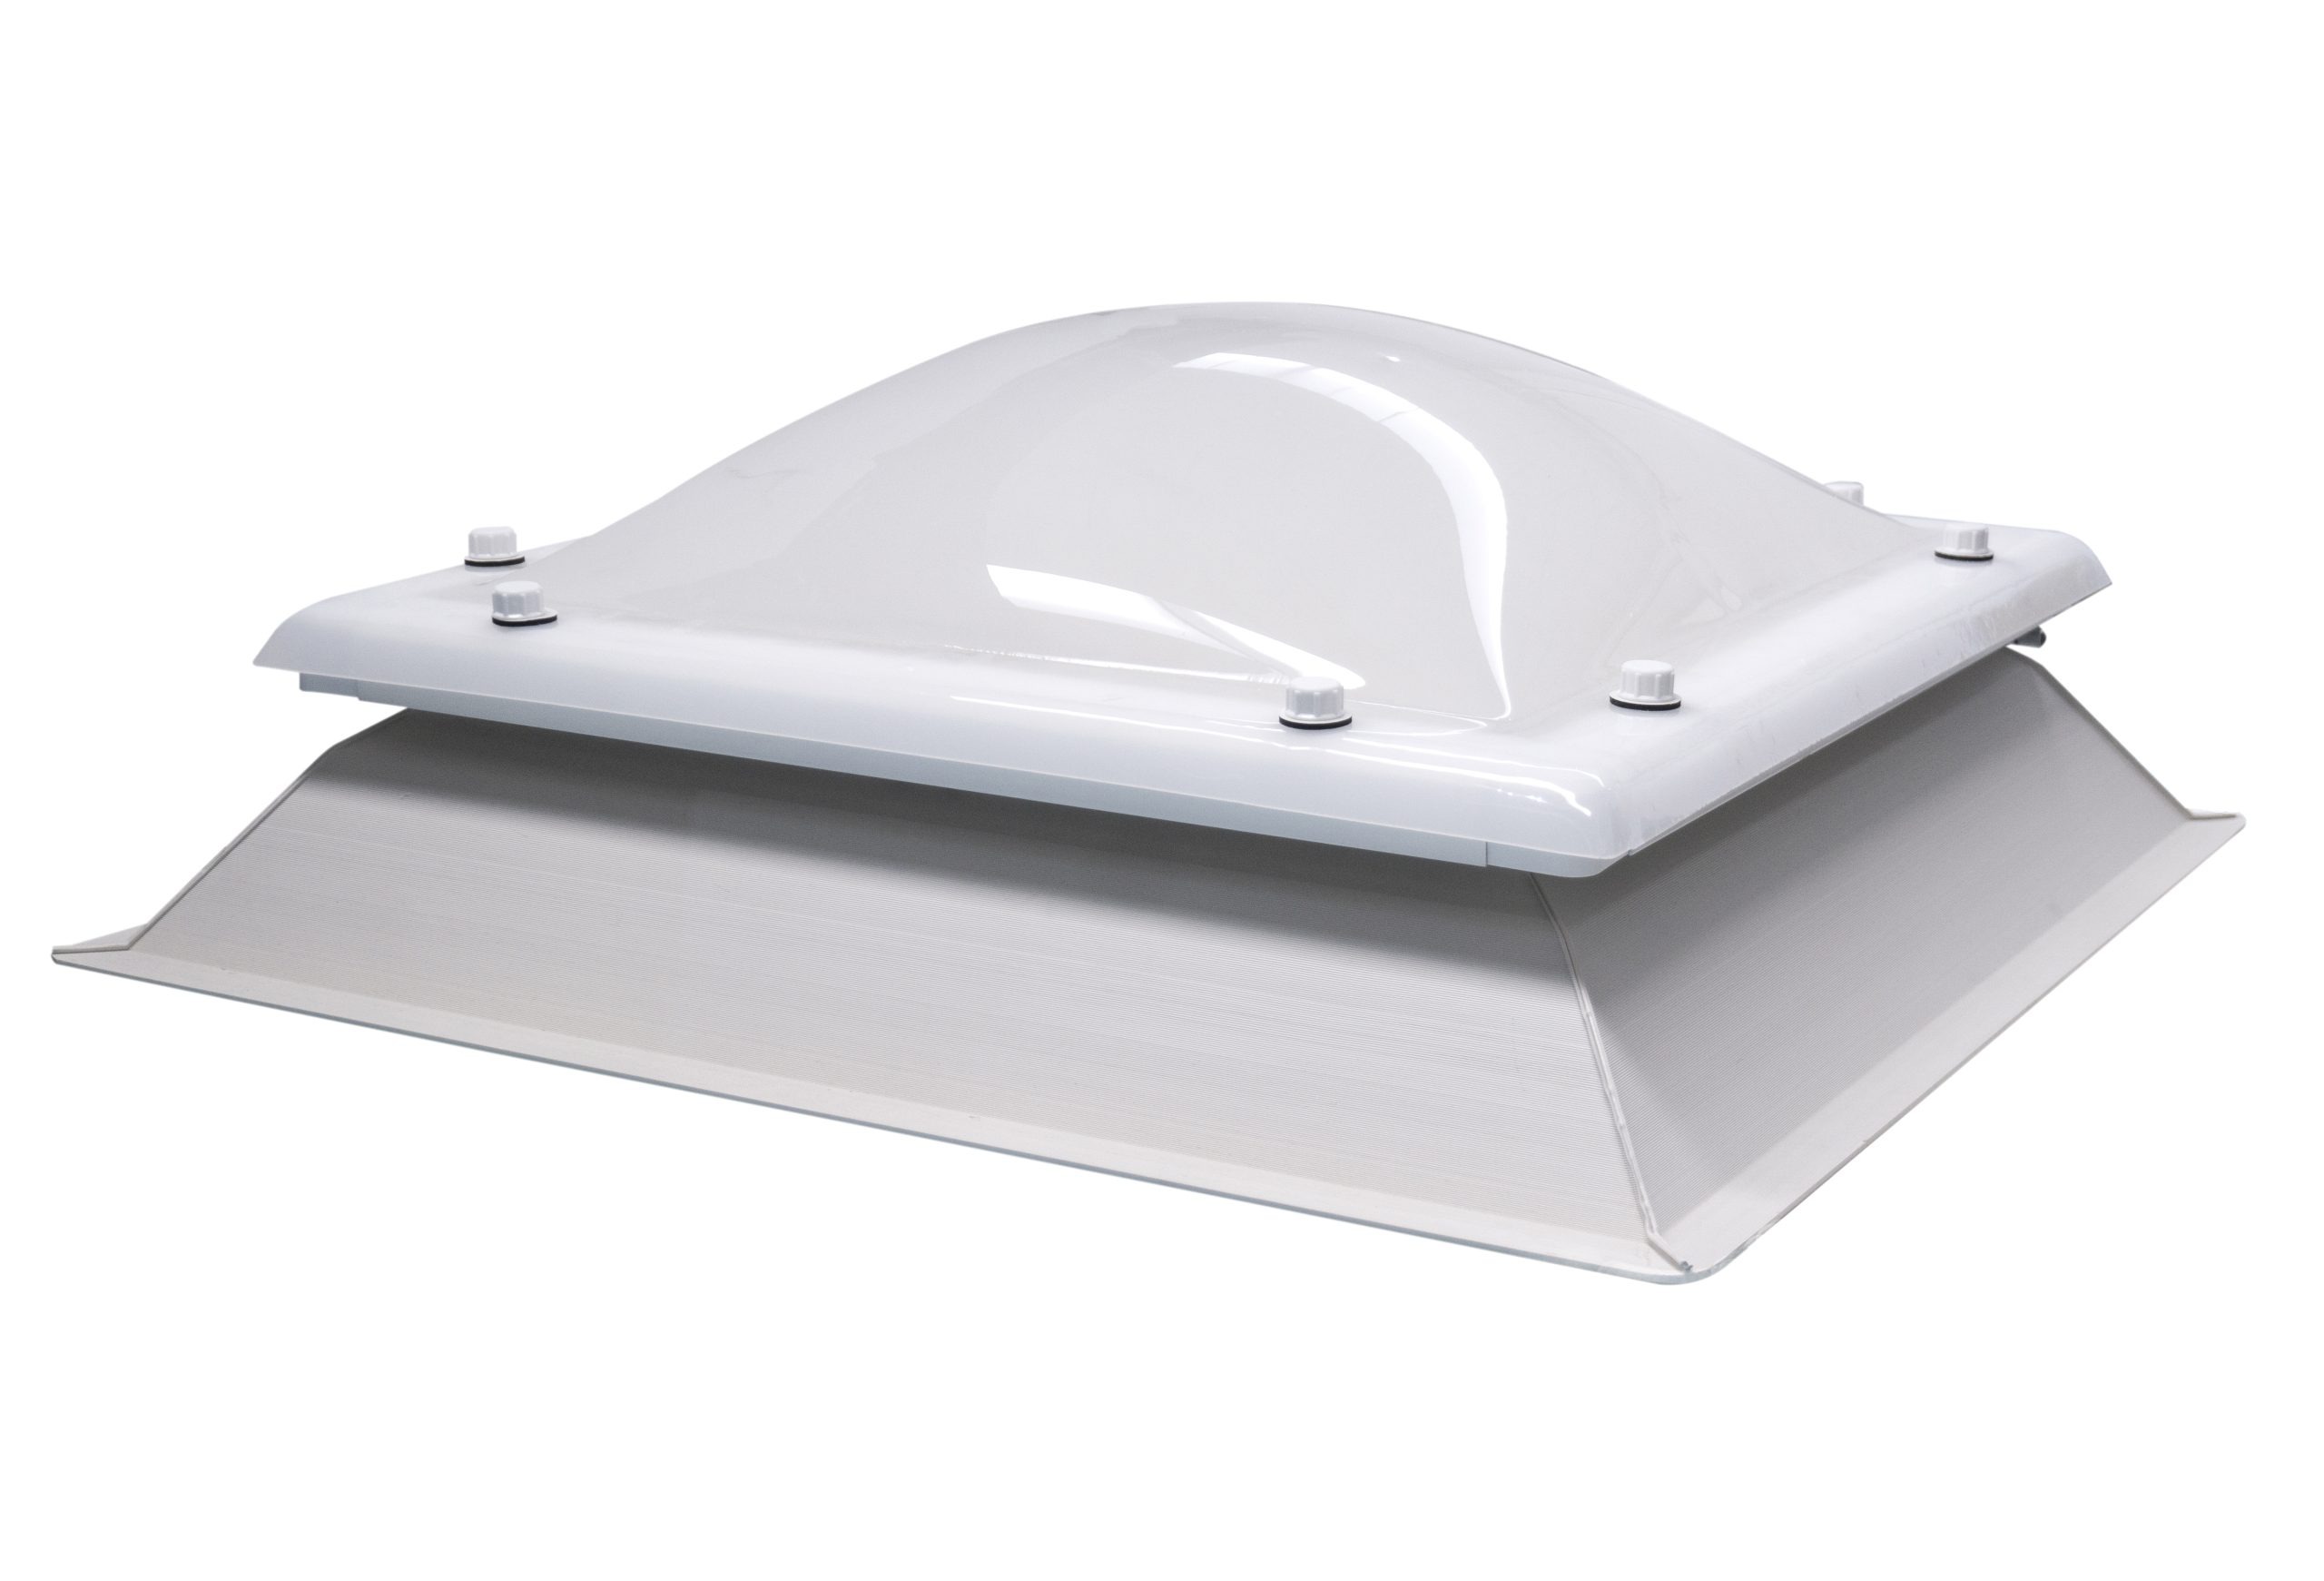 Ironlux - Cúpula Blanco Opal para Claraboya techo Cuadrada - Incluye  Juntas, Fijaciones y Accesorios de Montaje - Tragaluz - Fabricada en  Metacrilato